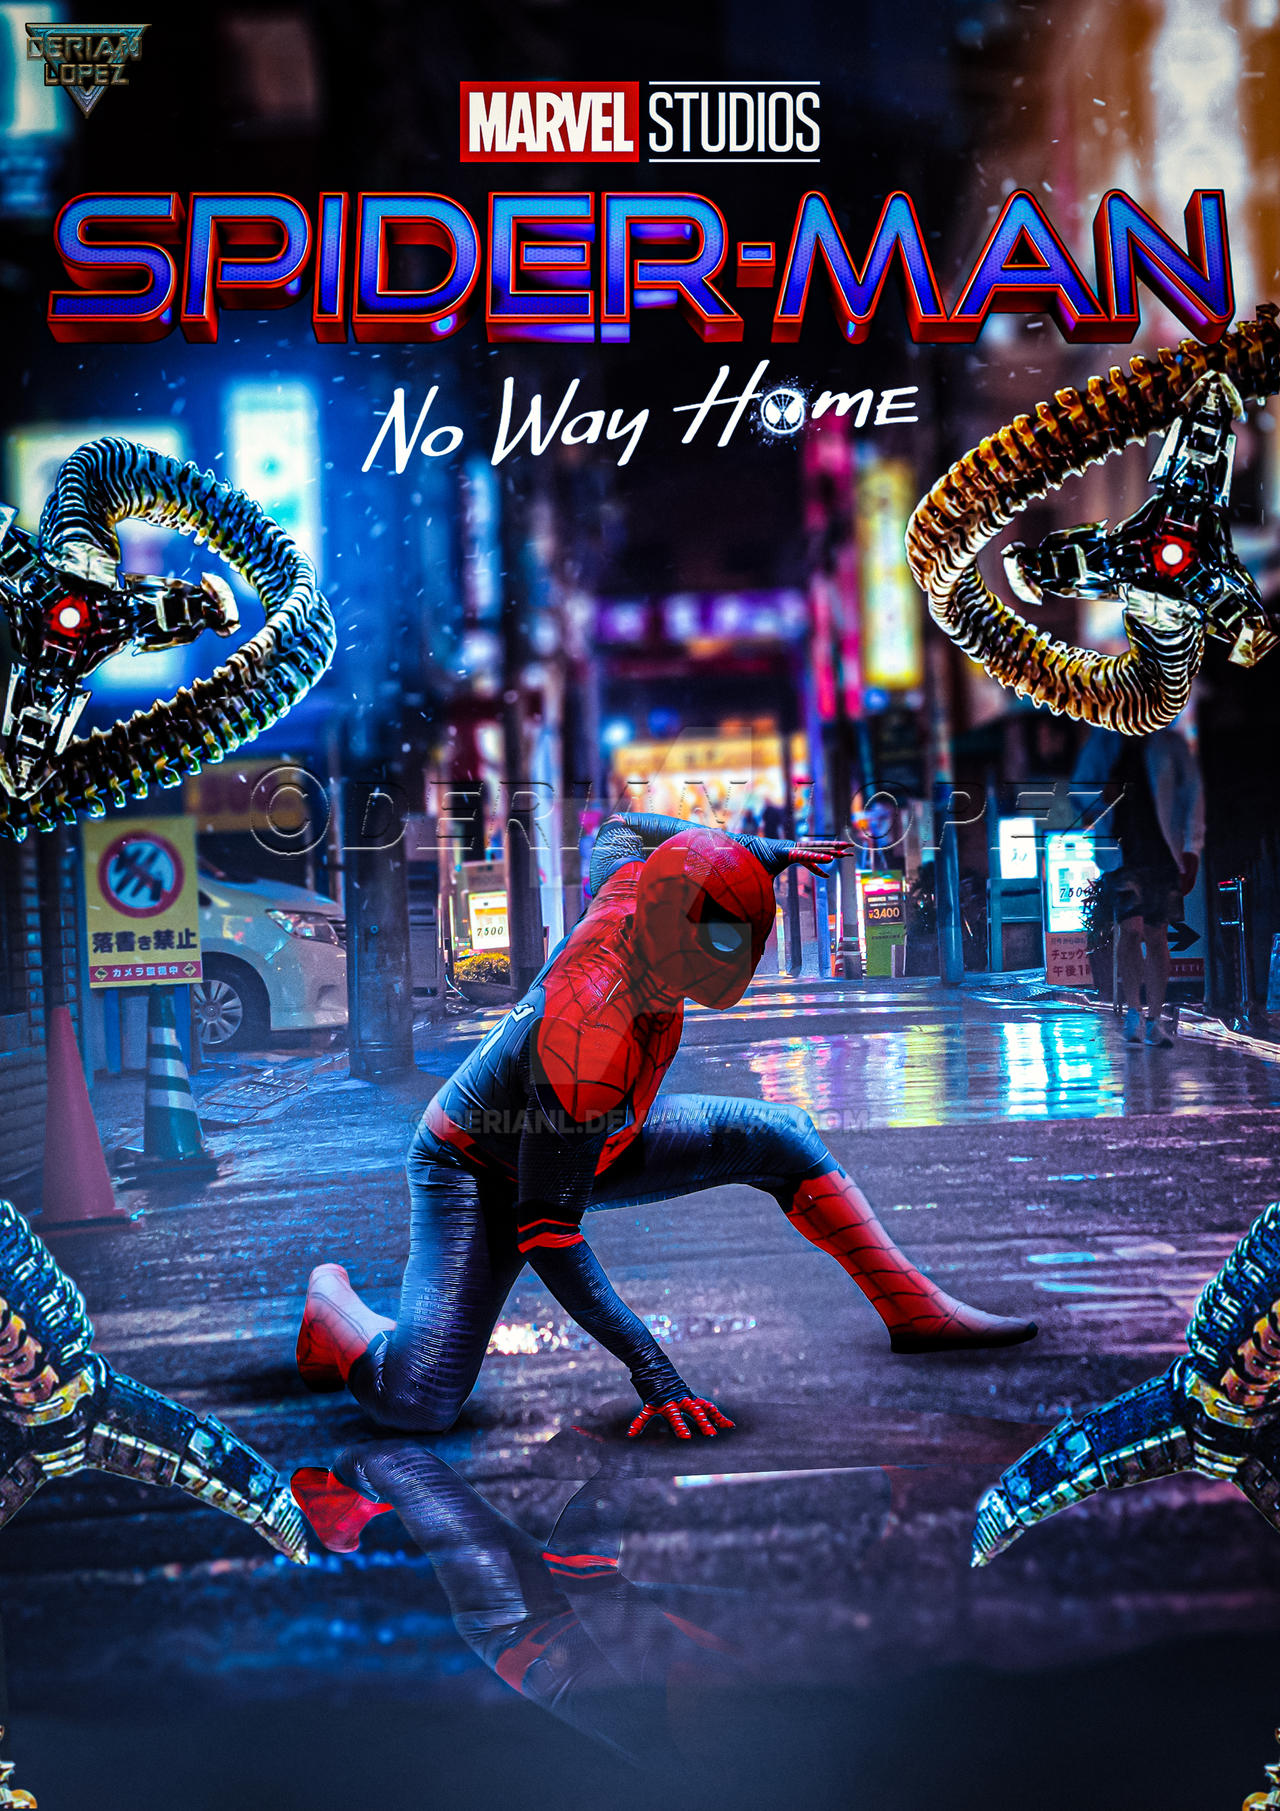 Amazing Spider-Man 3 Poster by derianl on DeviantArt